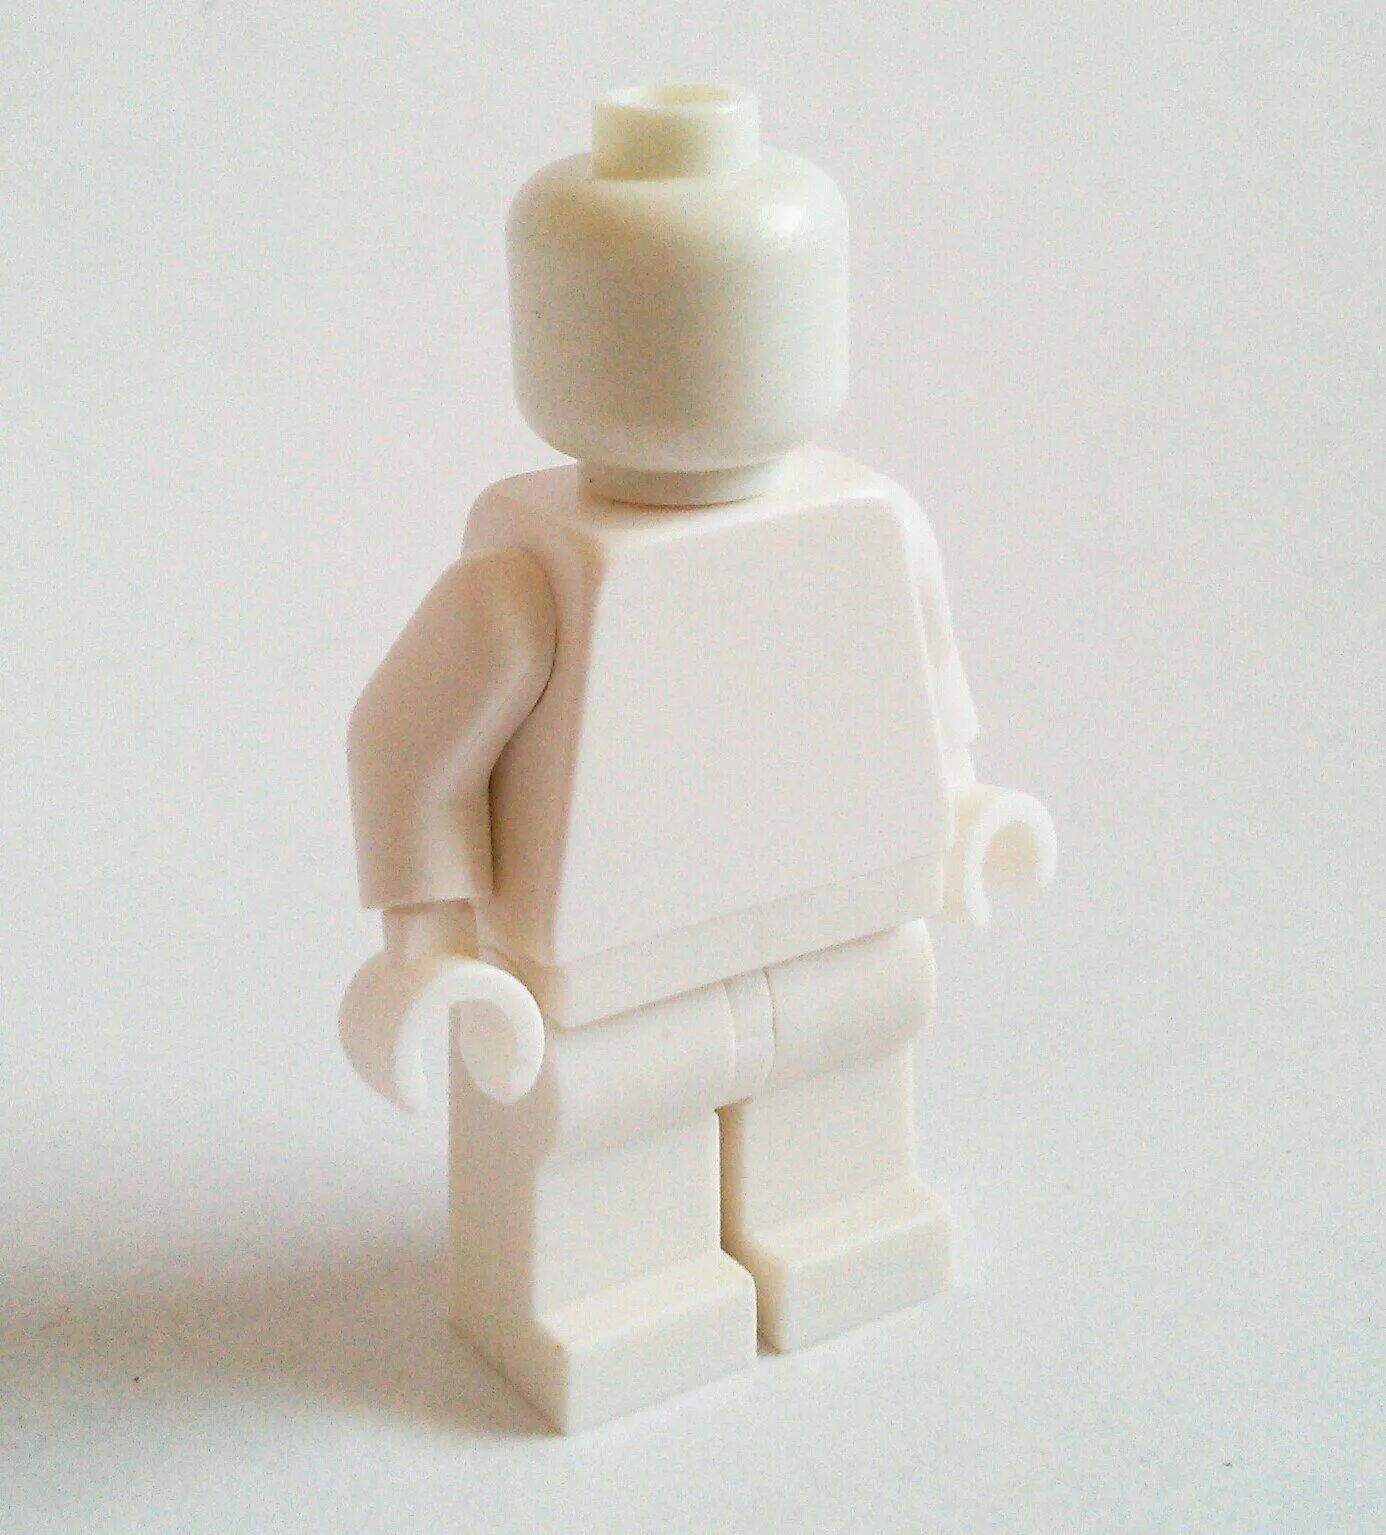 Без фигурки. LEGO monochrome Minifigure White. LEGO Minifig head. Джимми Легс лего. Фигурки из лего.